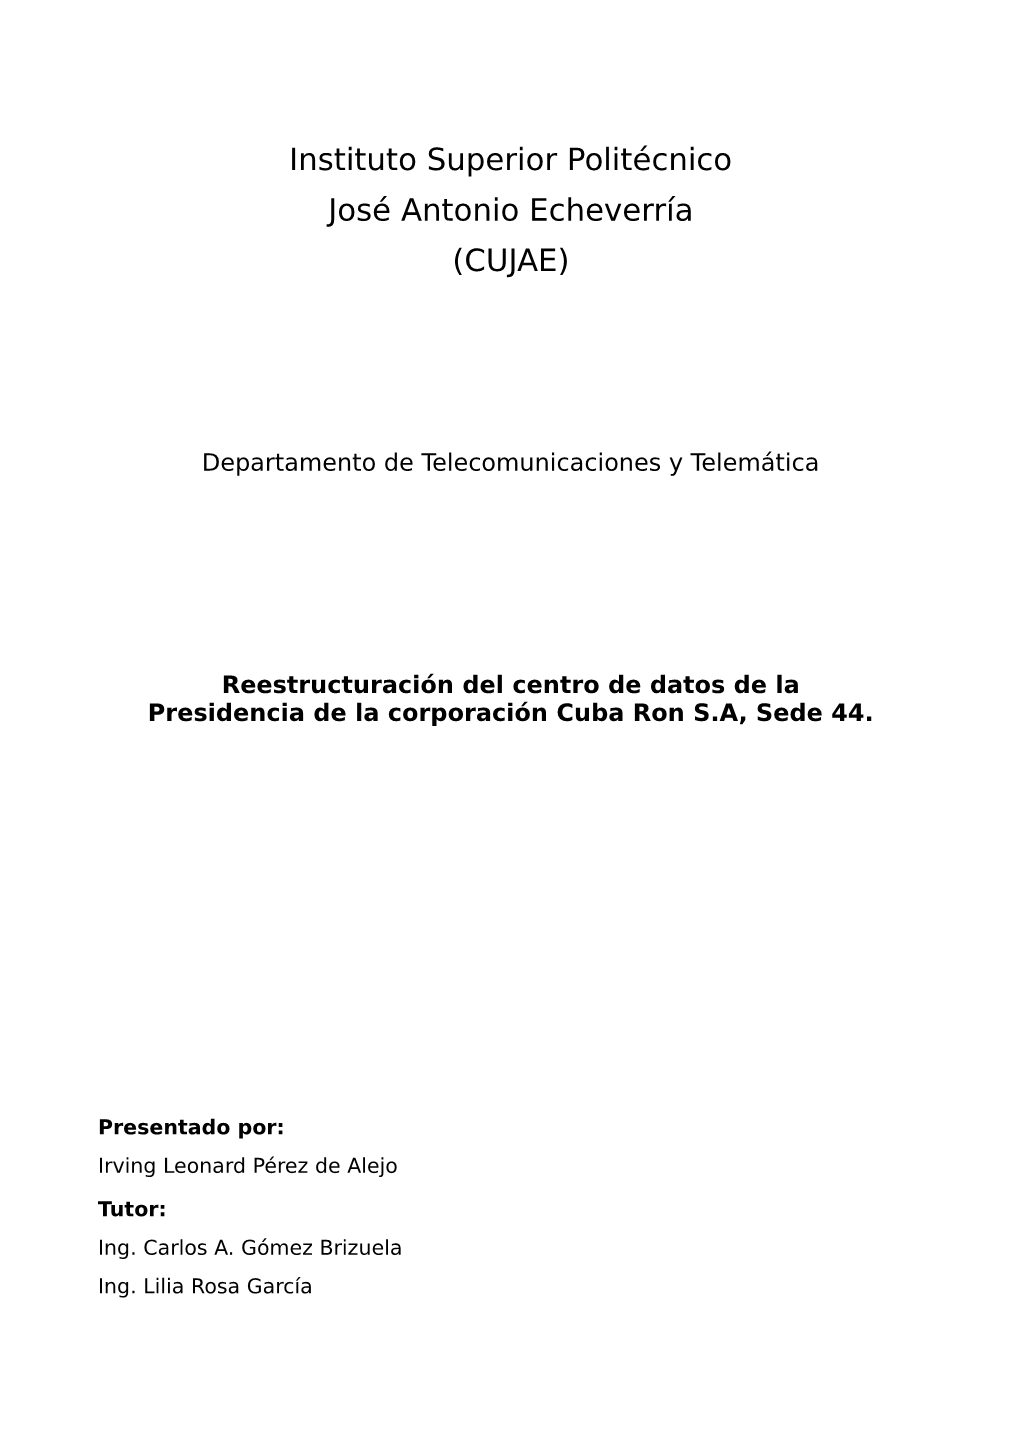 Reestructuración Del Centro De Datos De La Presidencia De La Corporación Cuba Ron S.A, Sede 44